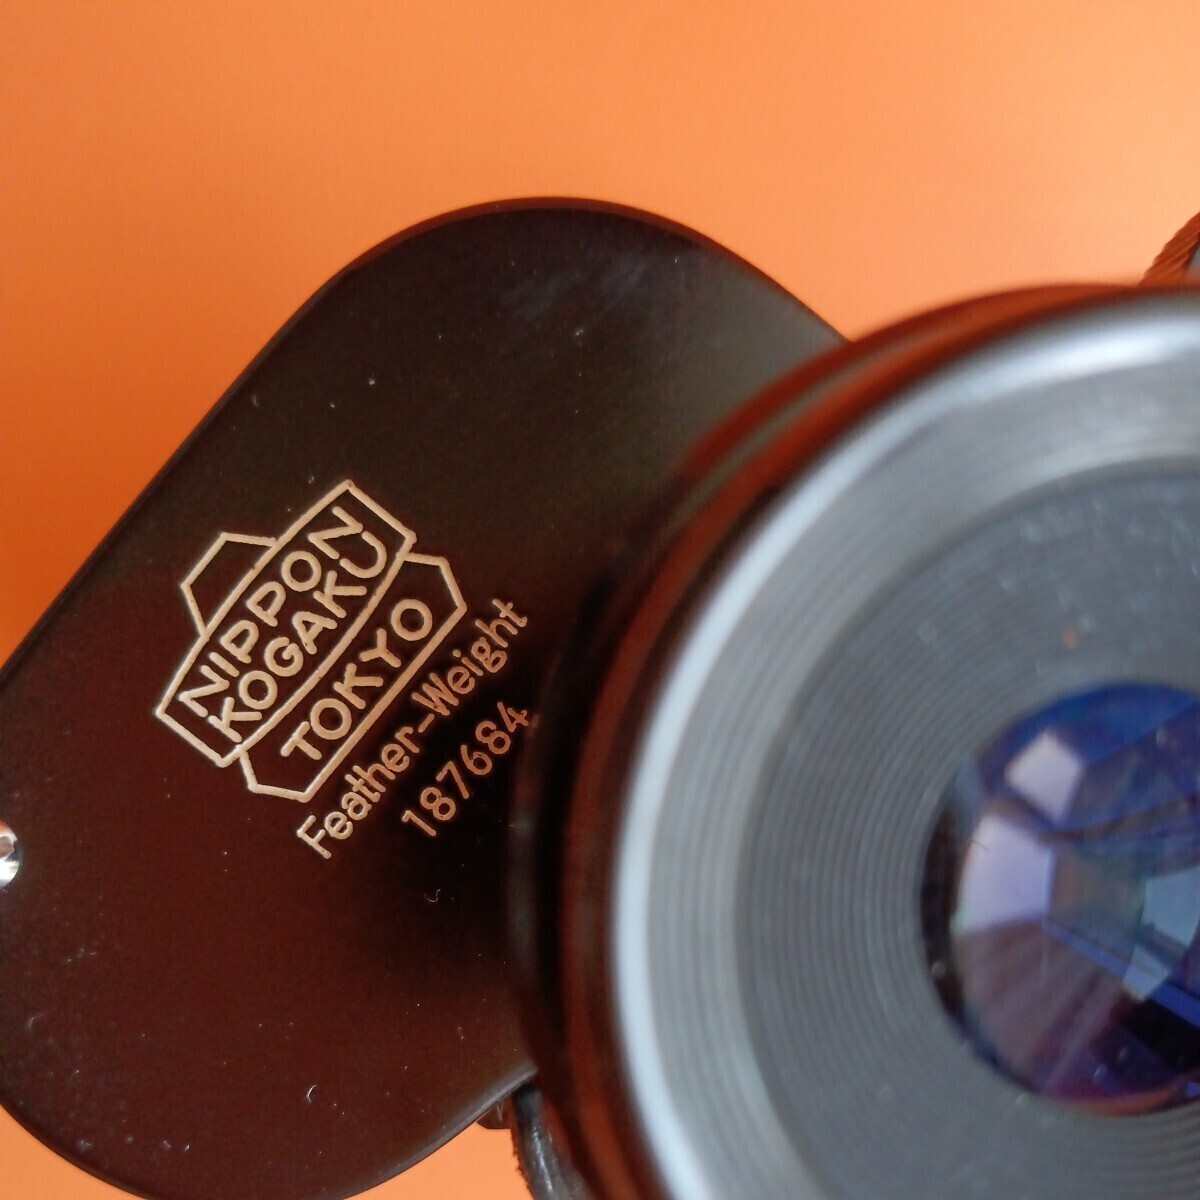  Nikon binoculars 7×50 7.3°